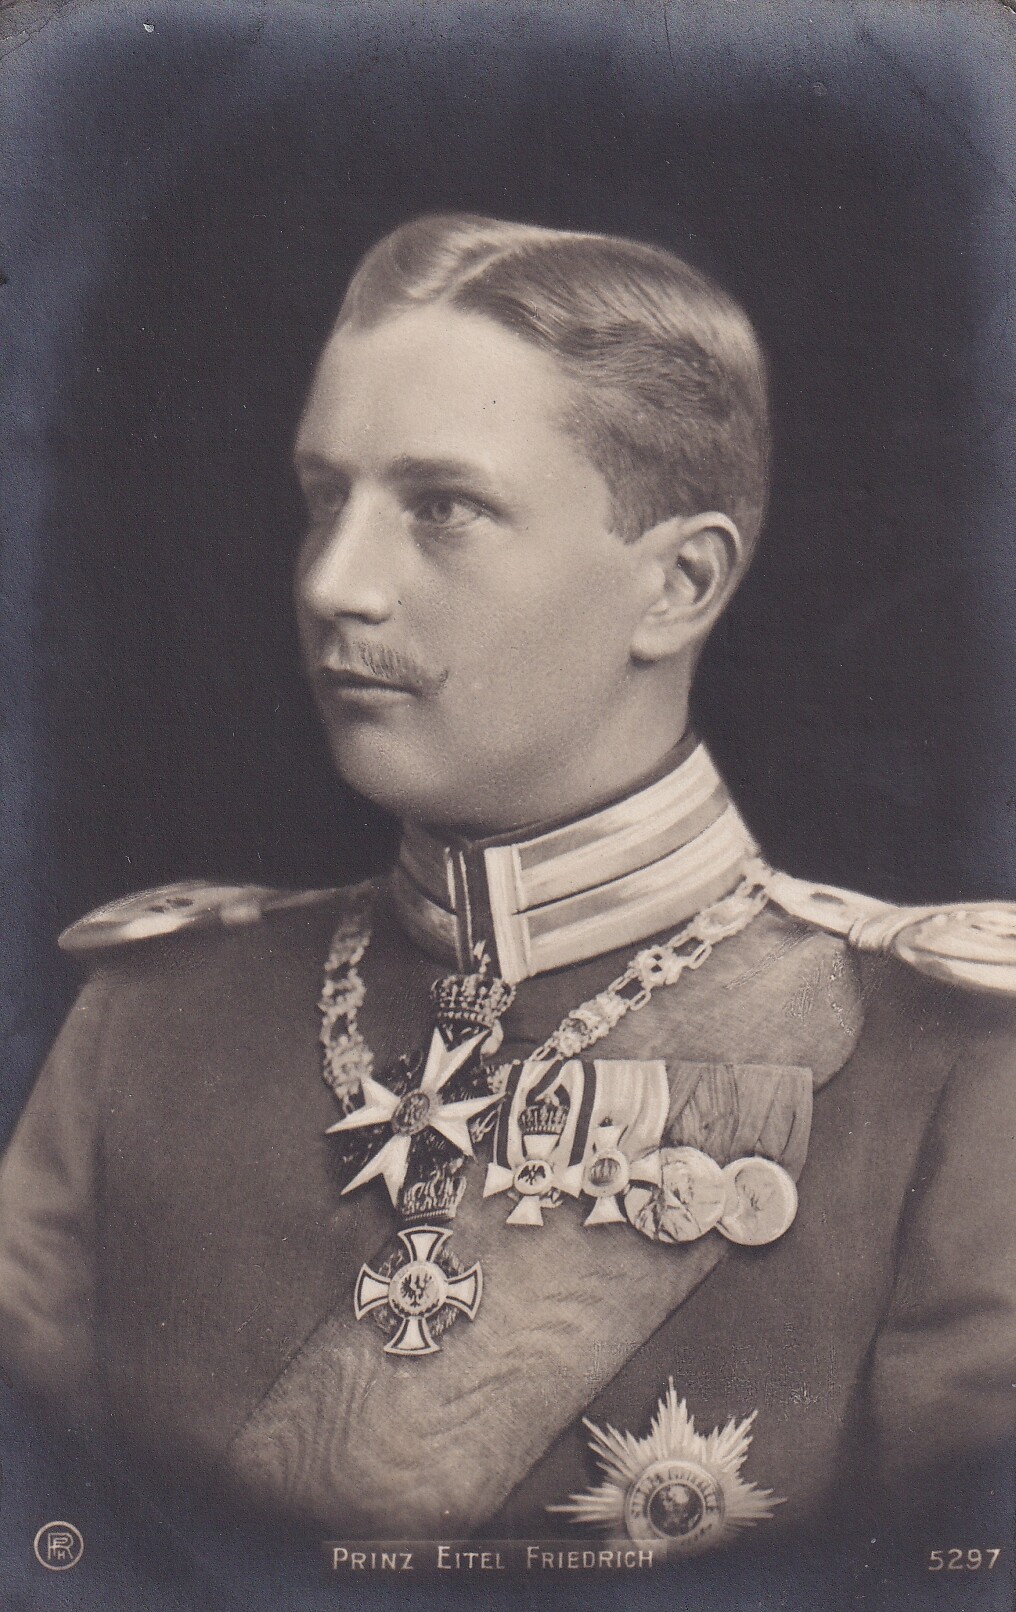 Bildpostkarte mit Foto des Prinzen Eitel Friedrich von Preußen, um 1905 (Schloß Wernigerode GmbH RR-F)